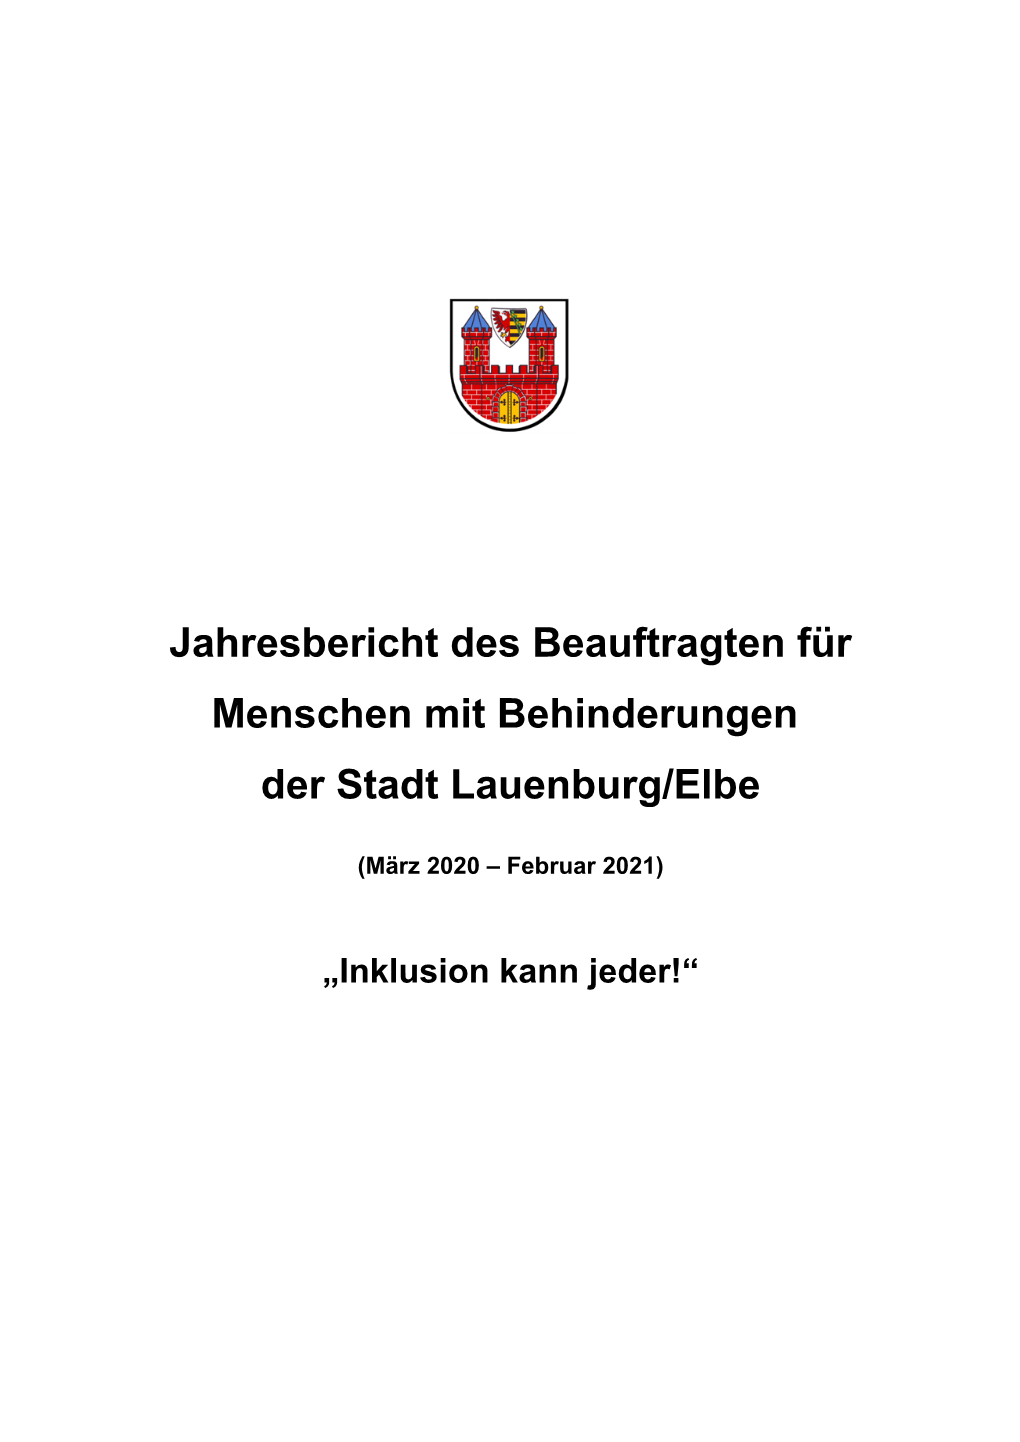 Bericht Des Behindertenbeaufrtagten Der Stadt Lauenburg/Elbe 2020 Bis 2021